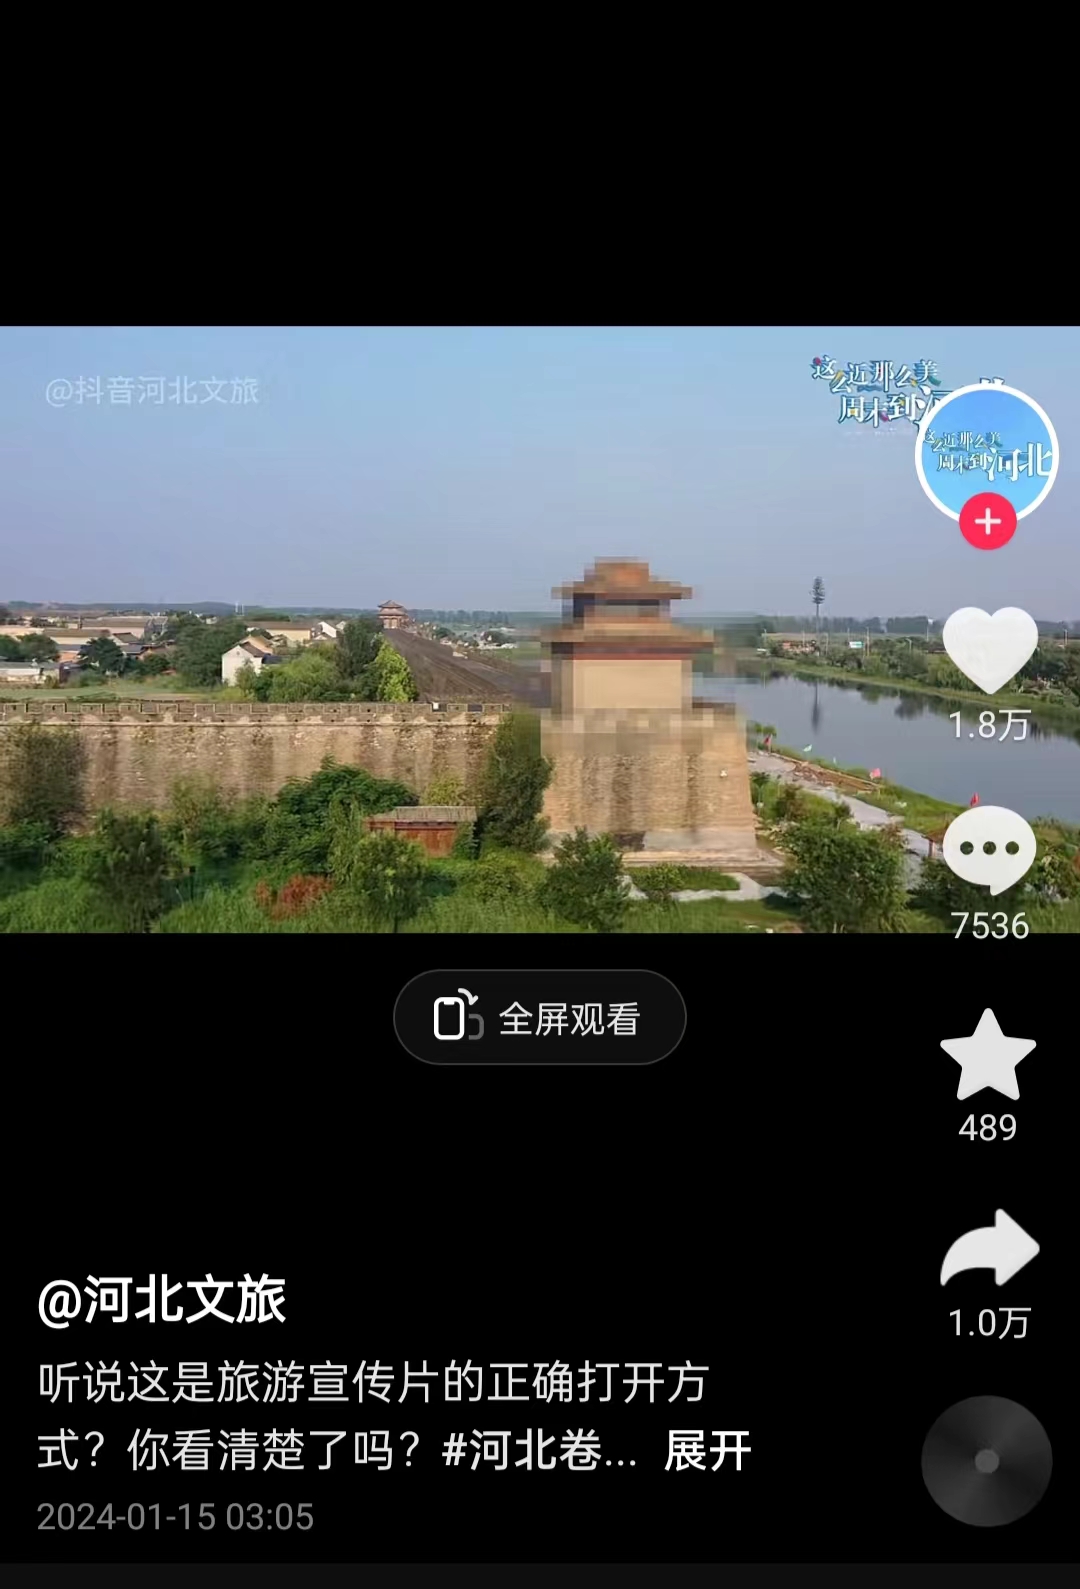 河北文旅根据网友建议发布的“打码版”旅游宣传片。 截图自“河北文旅”官方短视频账号。